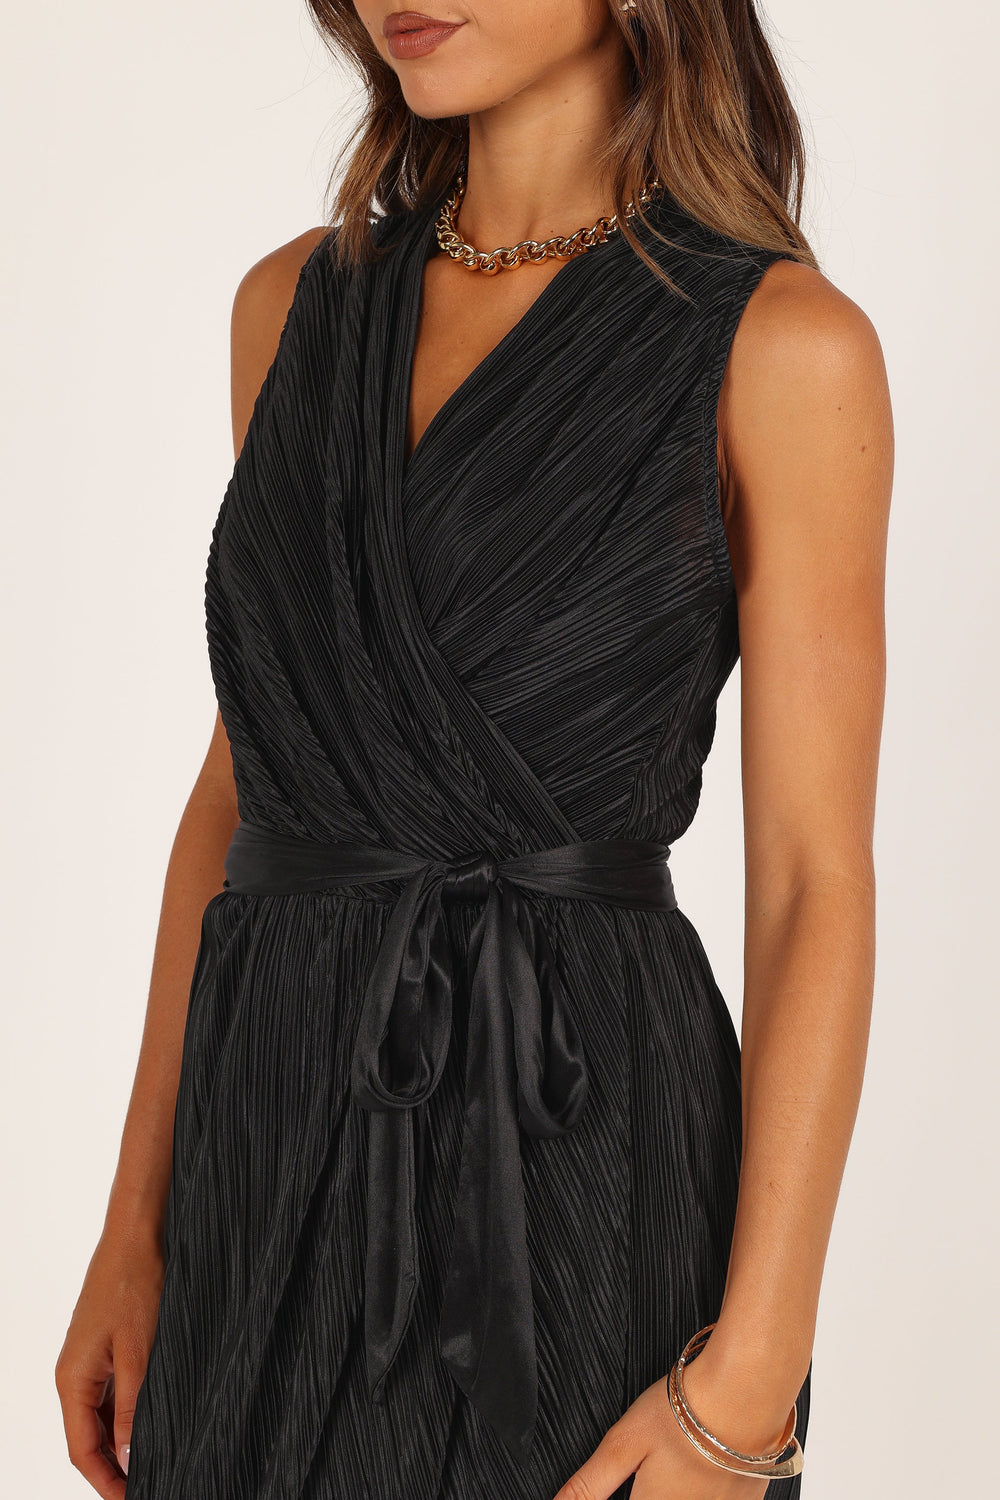 DRESSES Poitre Pleated Wrap Midi Dress - Black